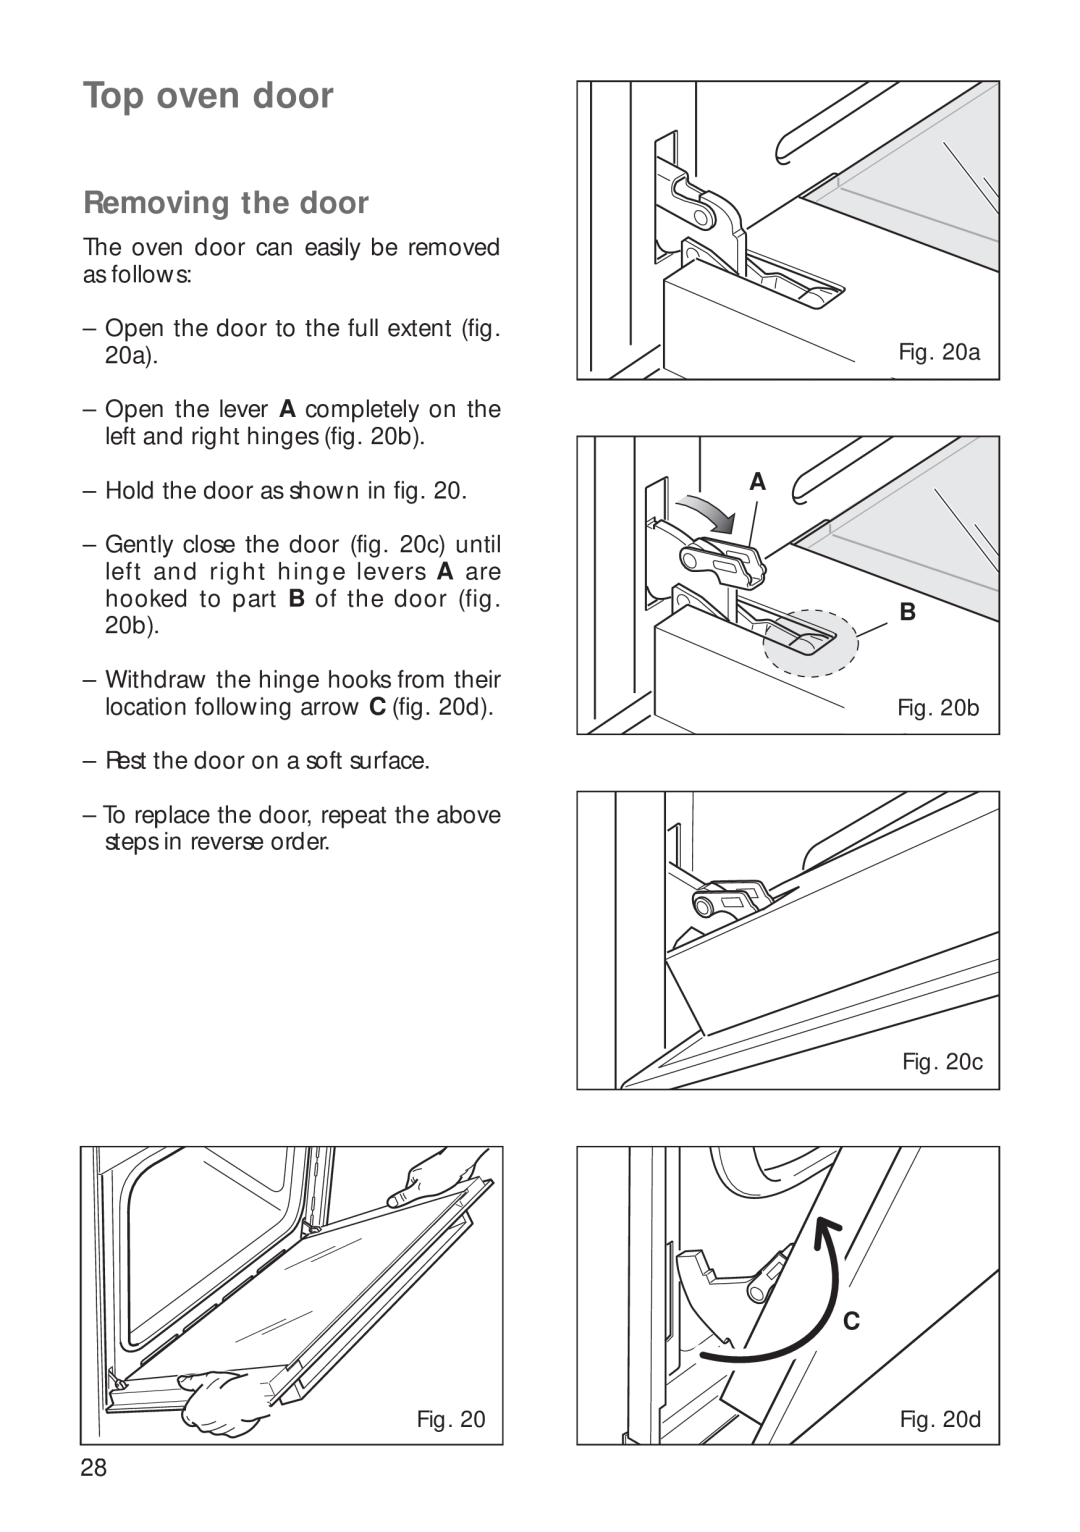 CDA RV 700 installation instructions Top oven door, Removing the door 